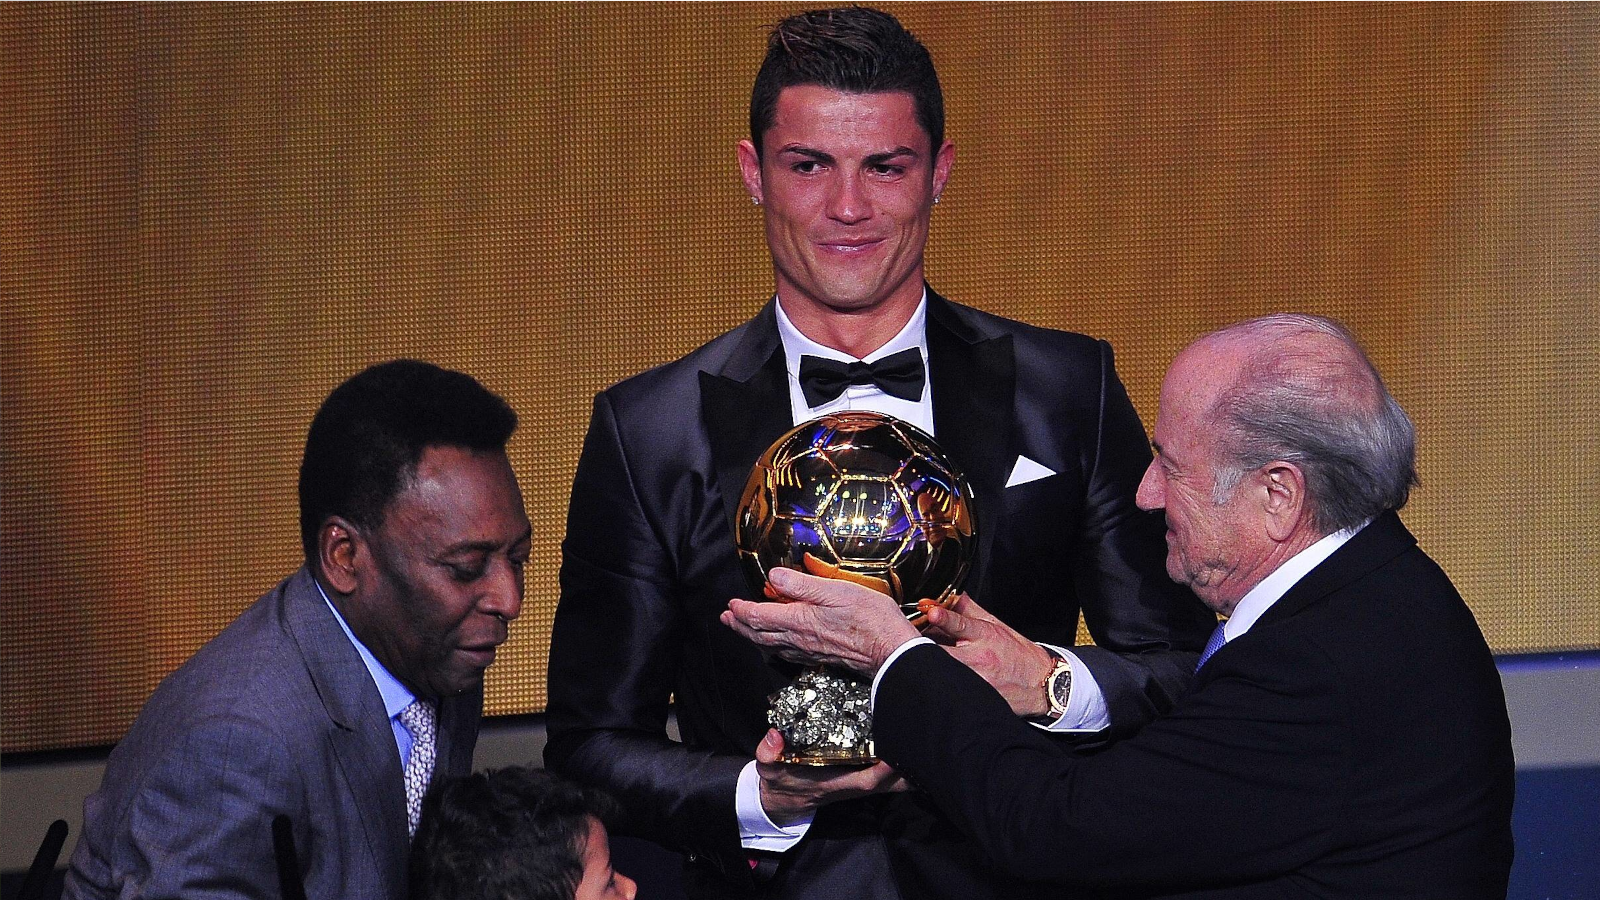 
                <strong>Zum zweiten Mal Weltfußballer</strong><br>
                In einer emotionalen Verleihung sichert sich Ronaldo im Jahr 2013 zum zweiten Mal den Titel des Weltfußballers - vor Lionel Messi und Franck Ribery. In der Saison 2011/12 schoss CR7 schon 46 Ligatore, 2012/13 waren es wieder starke 34 Tore.
              